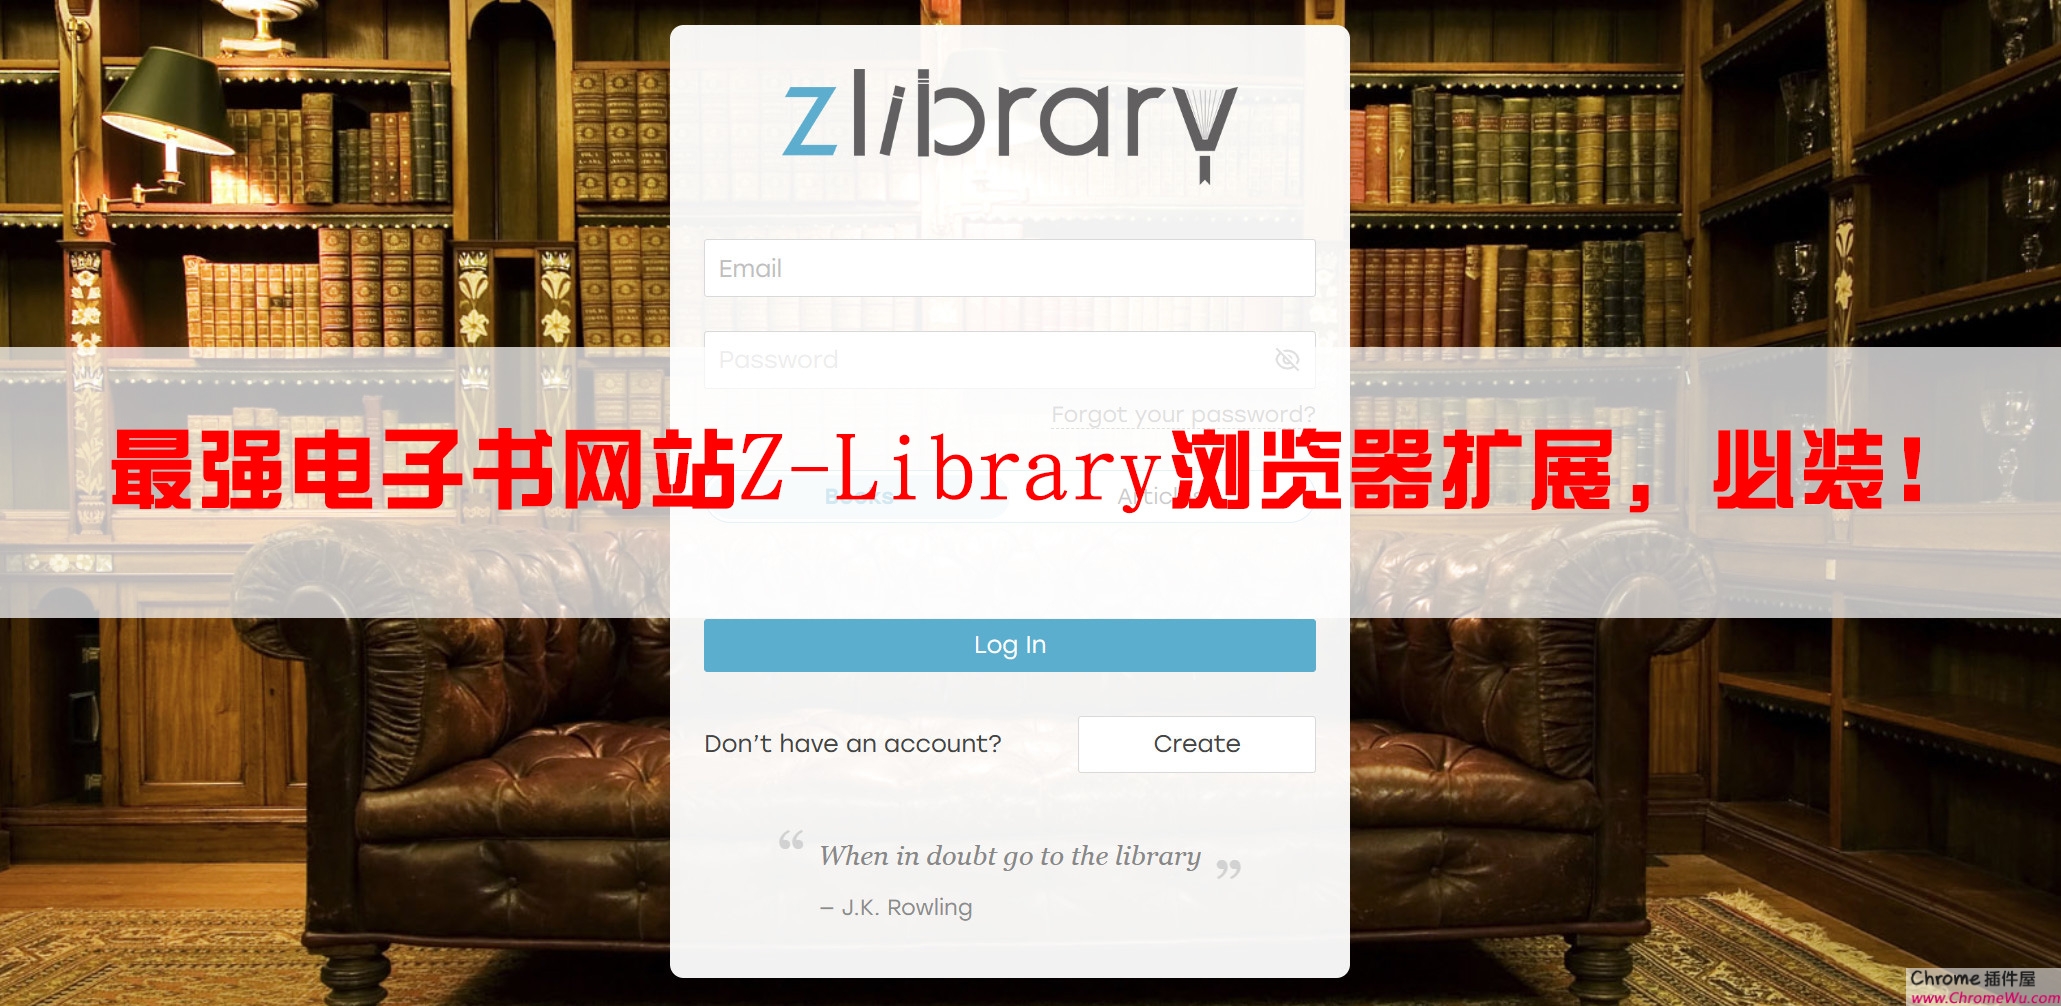 最强电子书网站 Z-Library 浏览器扩展ZLibrary Searcher，必装！